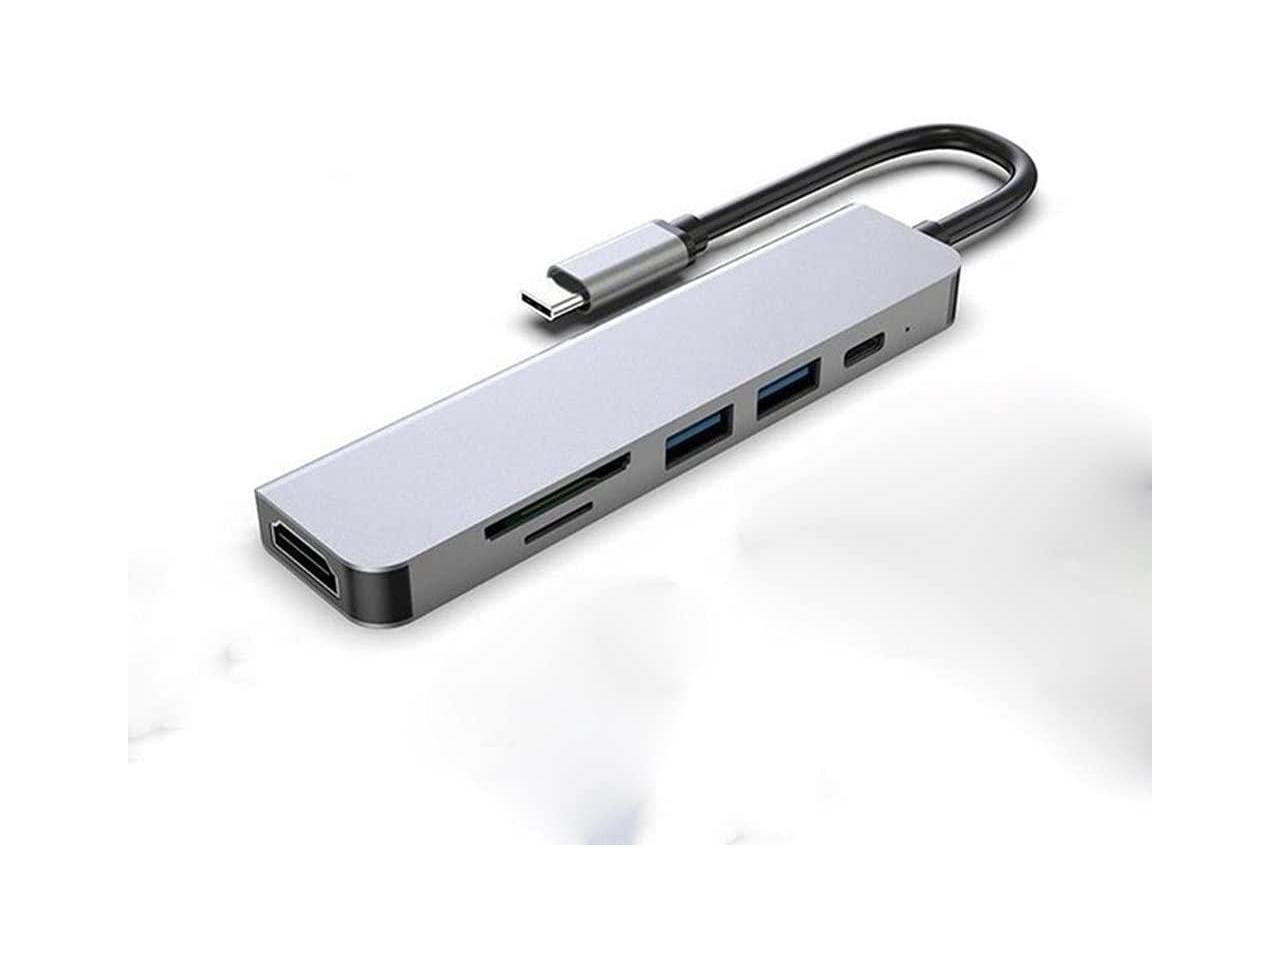 ZZNNN USB Hub 3.0 Adapter USB Splitter Notebook 4 USB 3.0 Hub for PC Computer Accessories